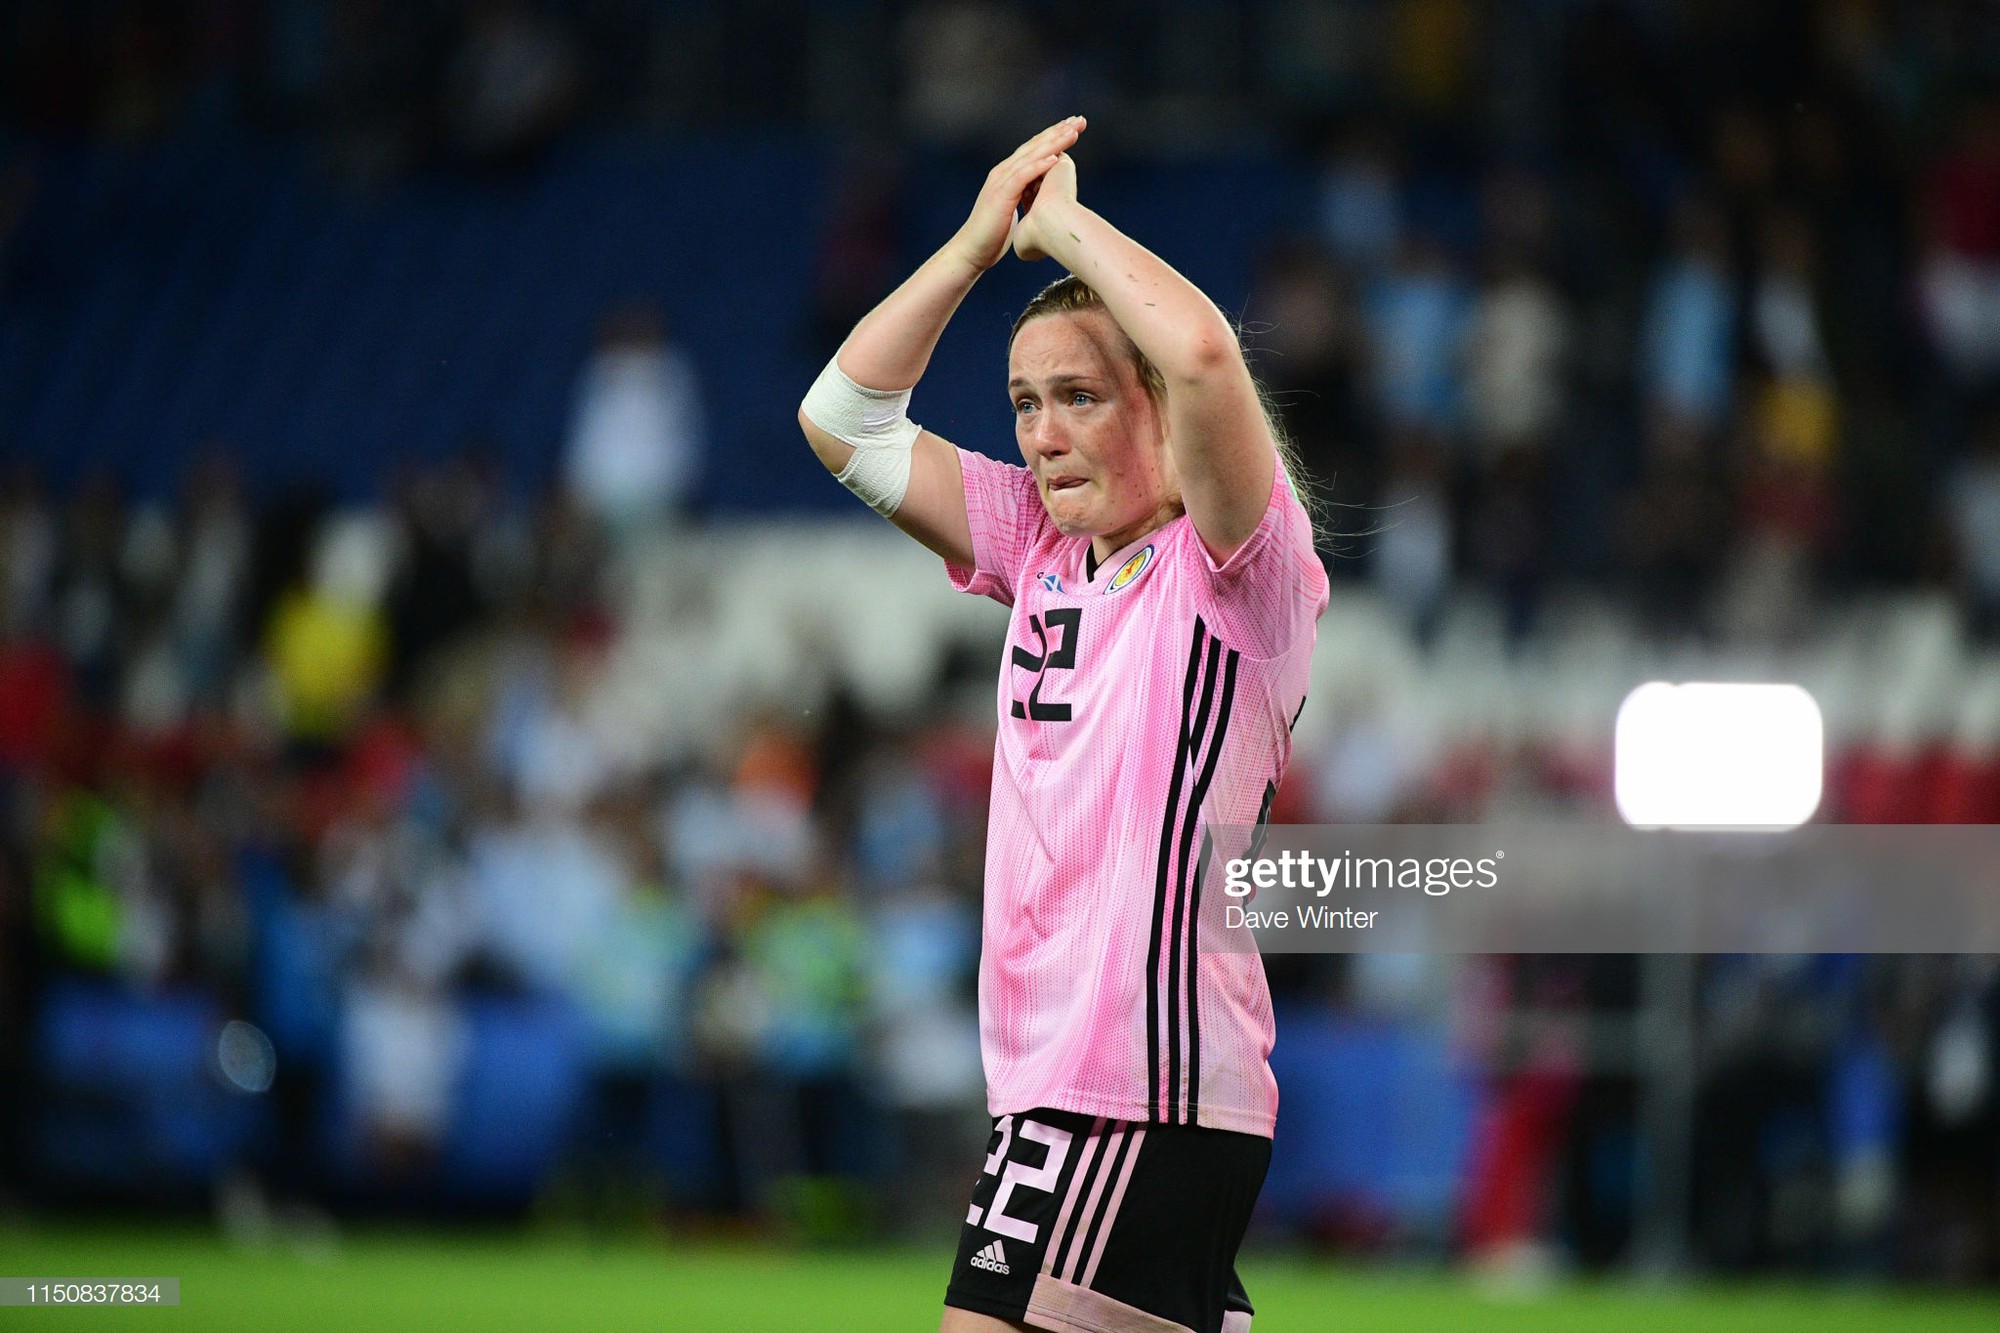 Dẫn trước 3 bàn nhưng bị gỡ hòa trong vỏn vẹn 20 phút, tuyển nữ Scotland bật khóc nức nở khi bị loại khỏi World Cup nữ 2019 - Ảnh 5.